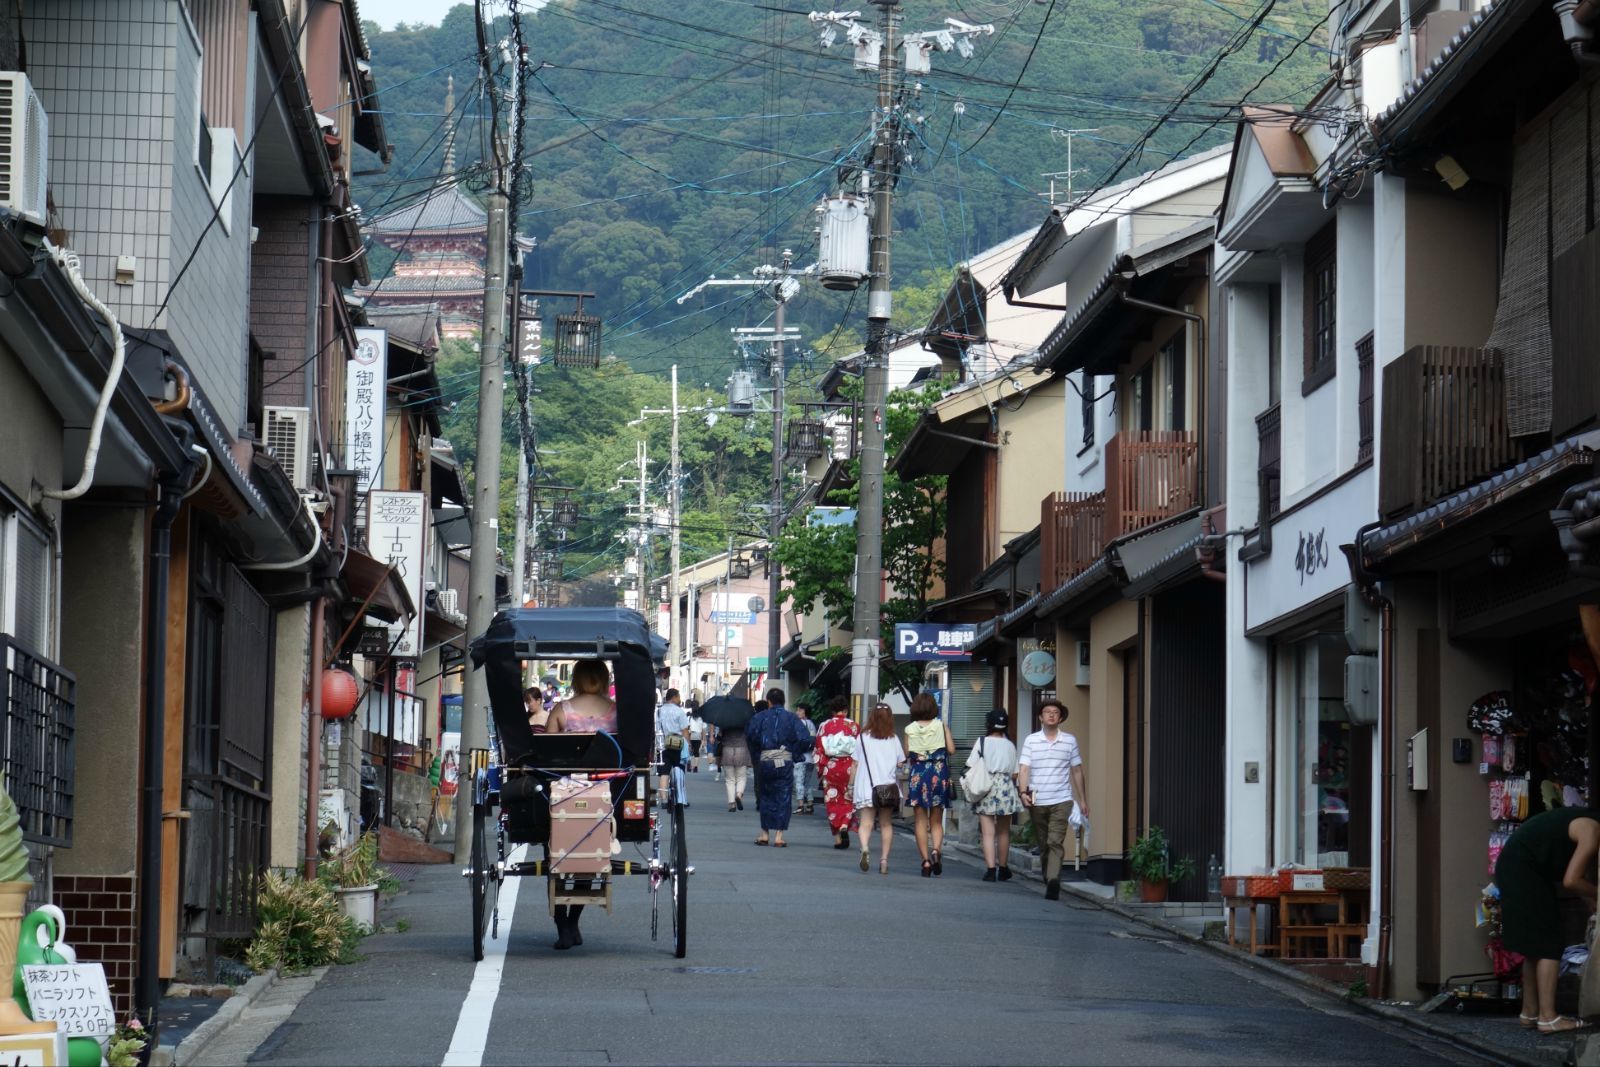 【携程攻略】京都清水寺景点,顺着二年坂上山就是清水